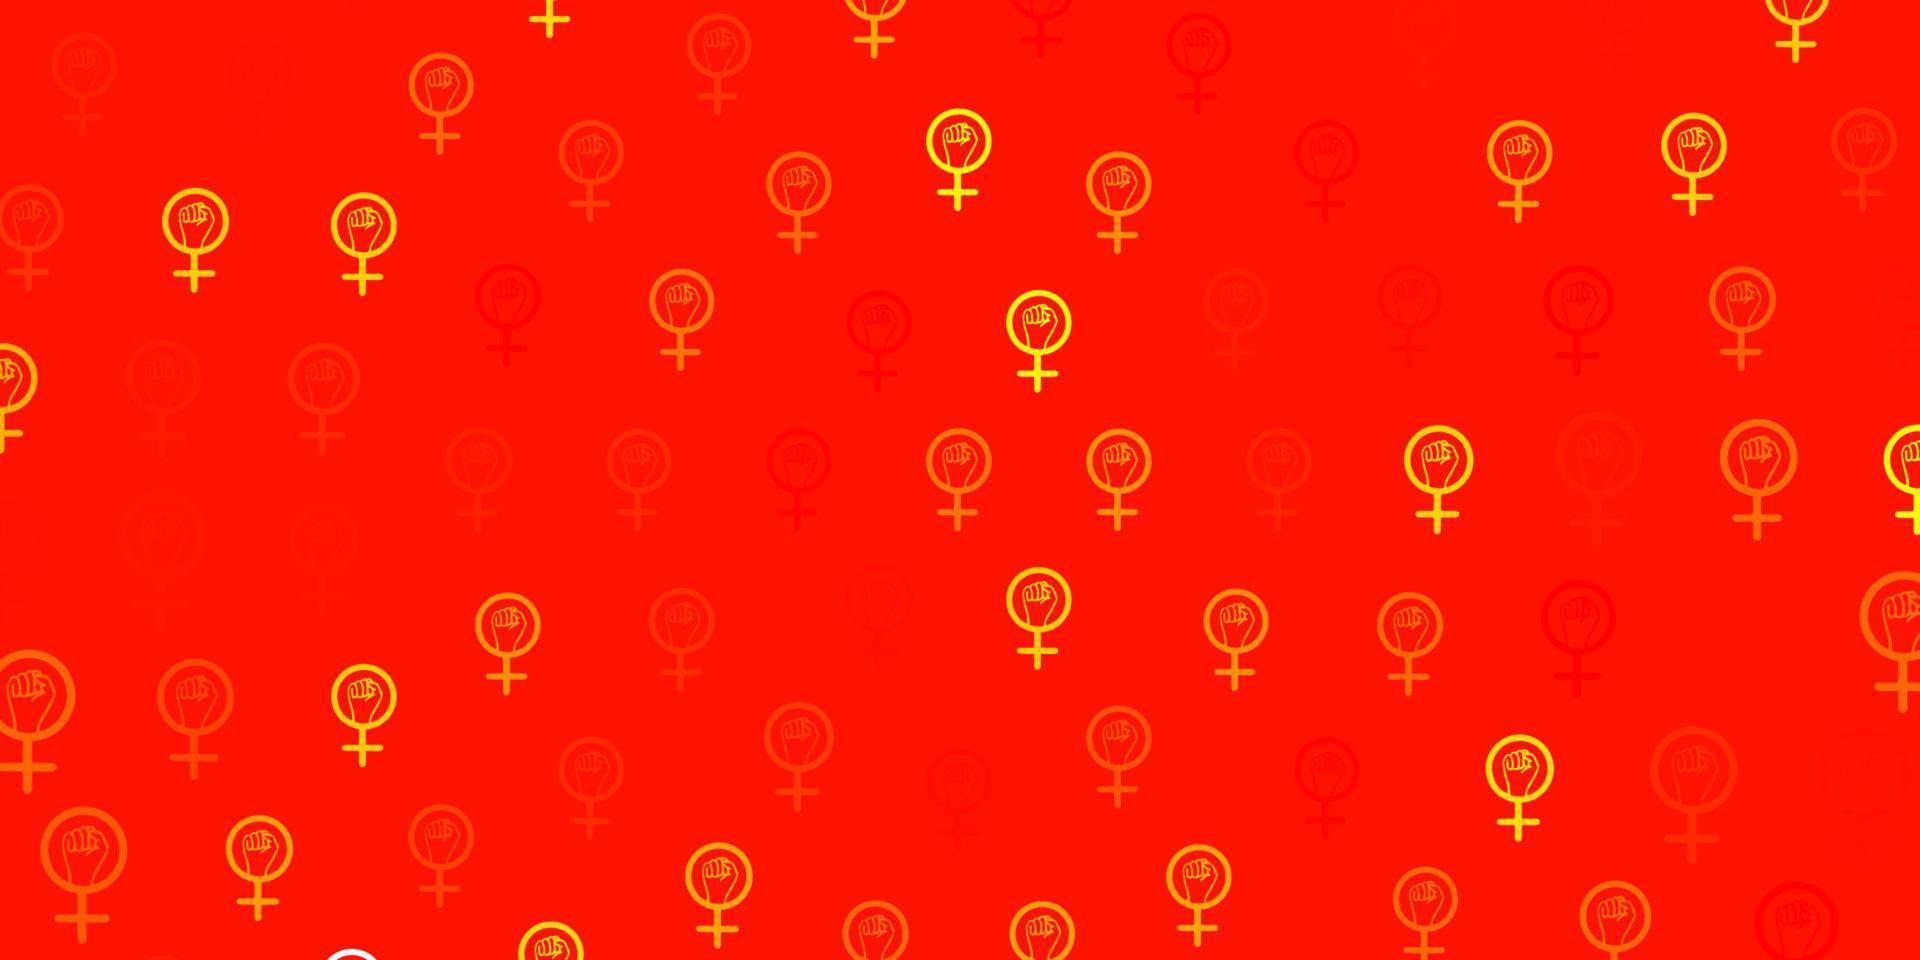 ljus orange vektor mönster med feminism element.